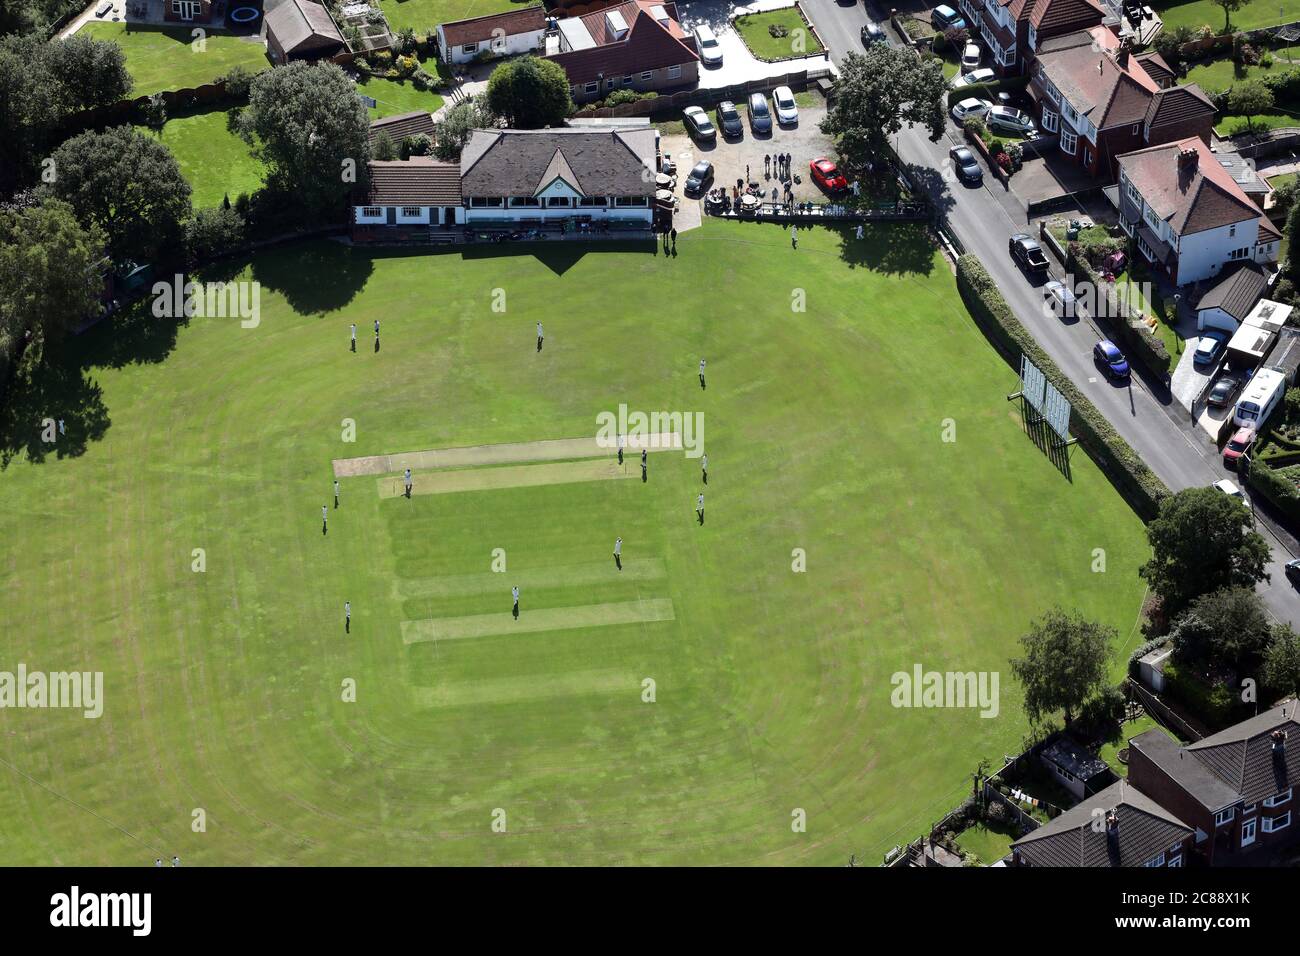 Vue aérienne d'un match de cricket du village qui a lieu un dimanche matin Banque D'Images